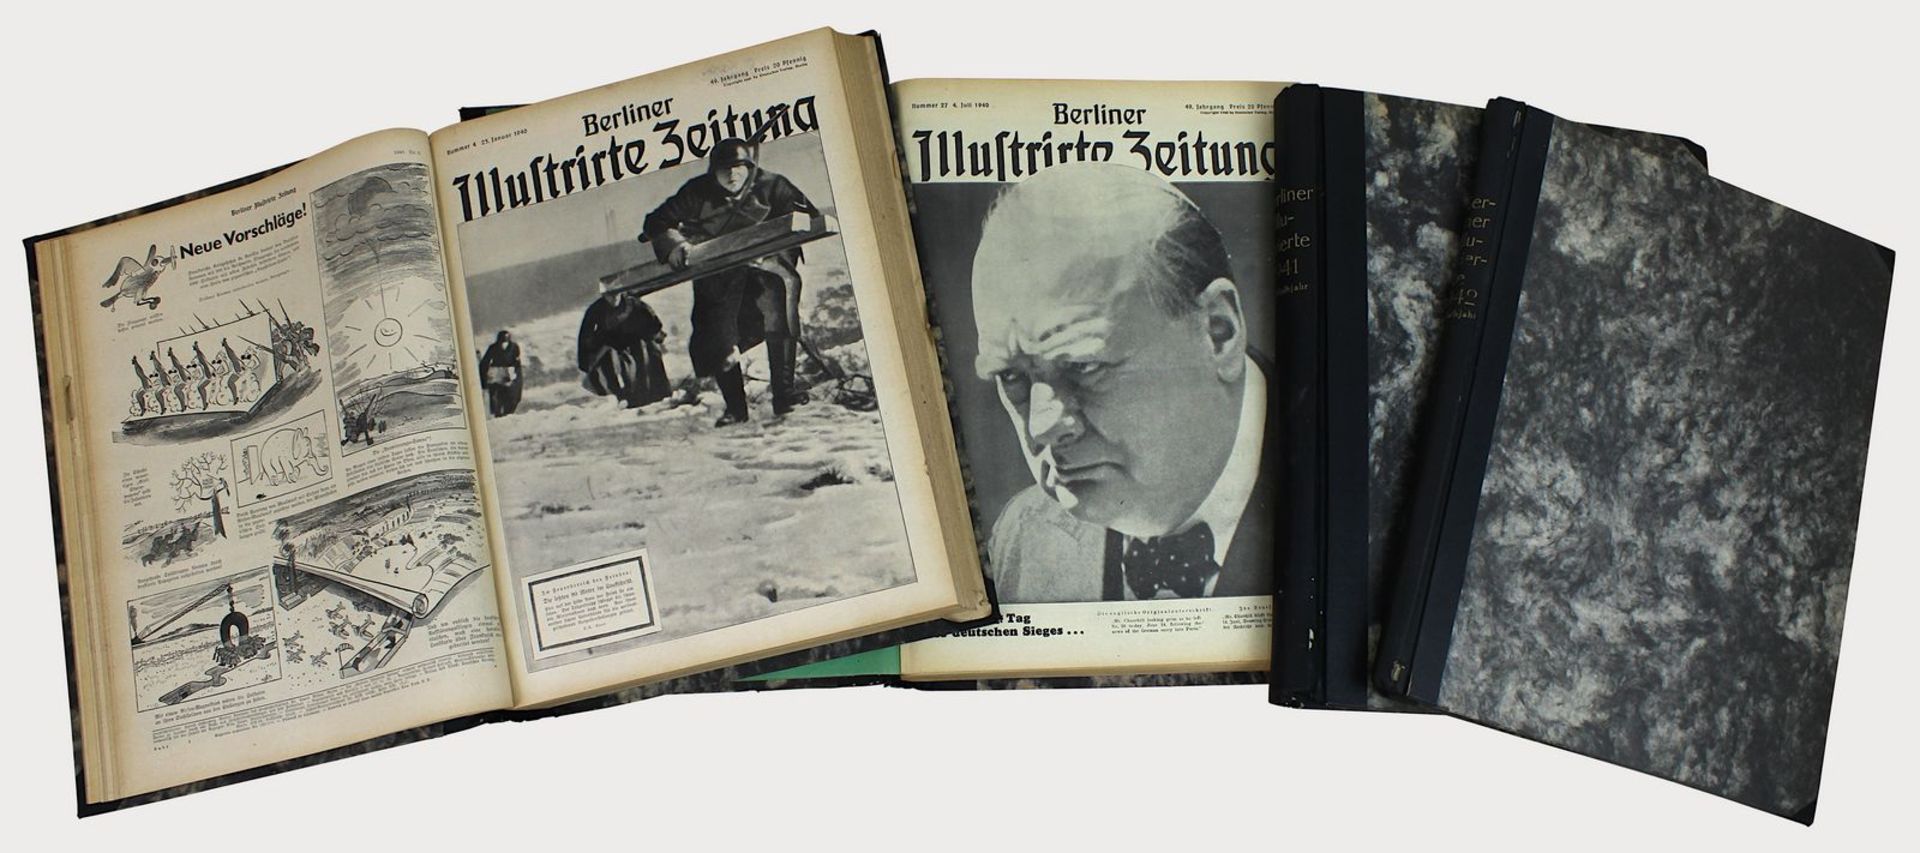 Konvolut "Berliner Illustrierte Zeitung", 1940 - 1942, Deutscher Verlag Berlin, 1940 [49. Jahrgang],